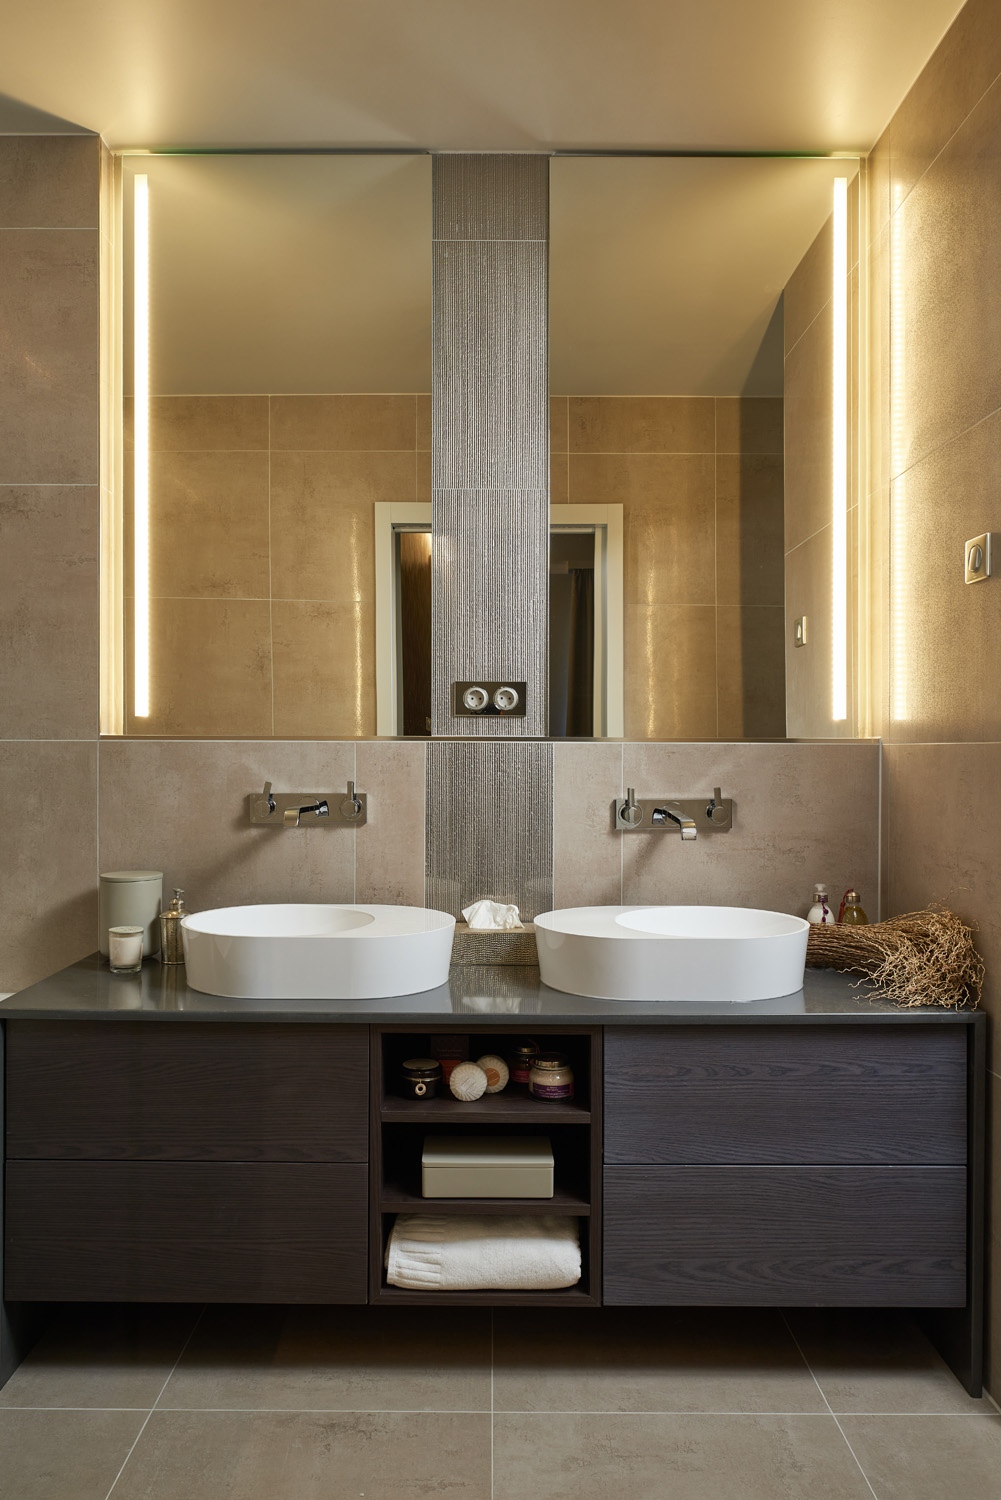 Az egyedi mosdószekrény egyenes vonalait a lekerekített mosdókagylók lágyítják a fürdőszobában, ahol a szürkés- barnás színek némi csillogással egészülnek ki